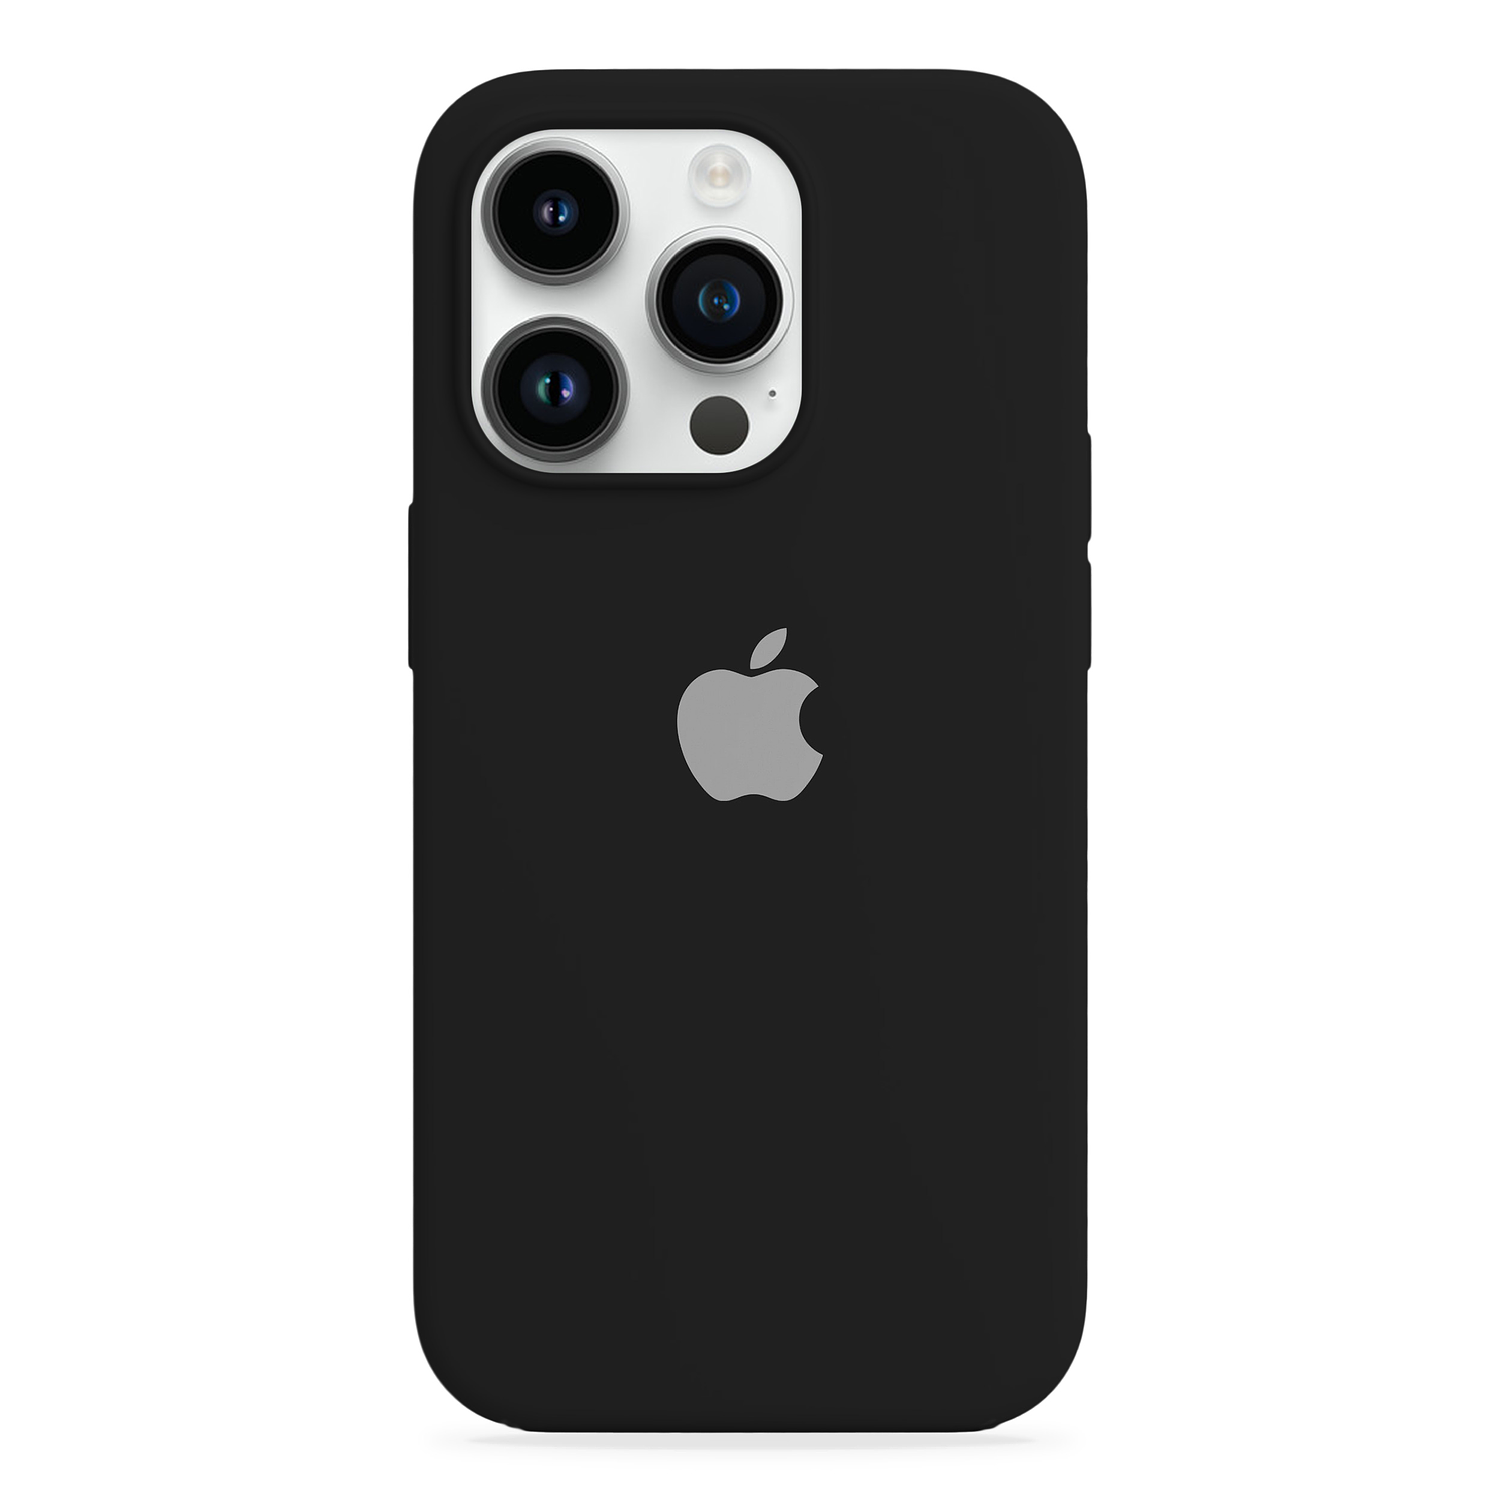 Carcasa de Silicona - iPhone 14 Pro Max (Colores)